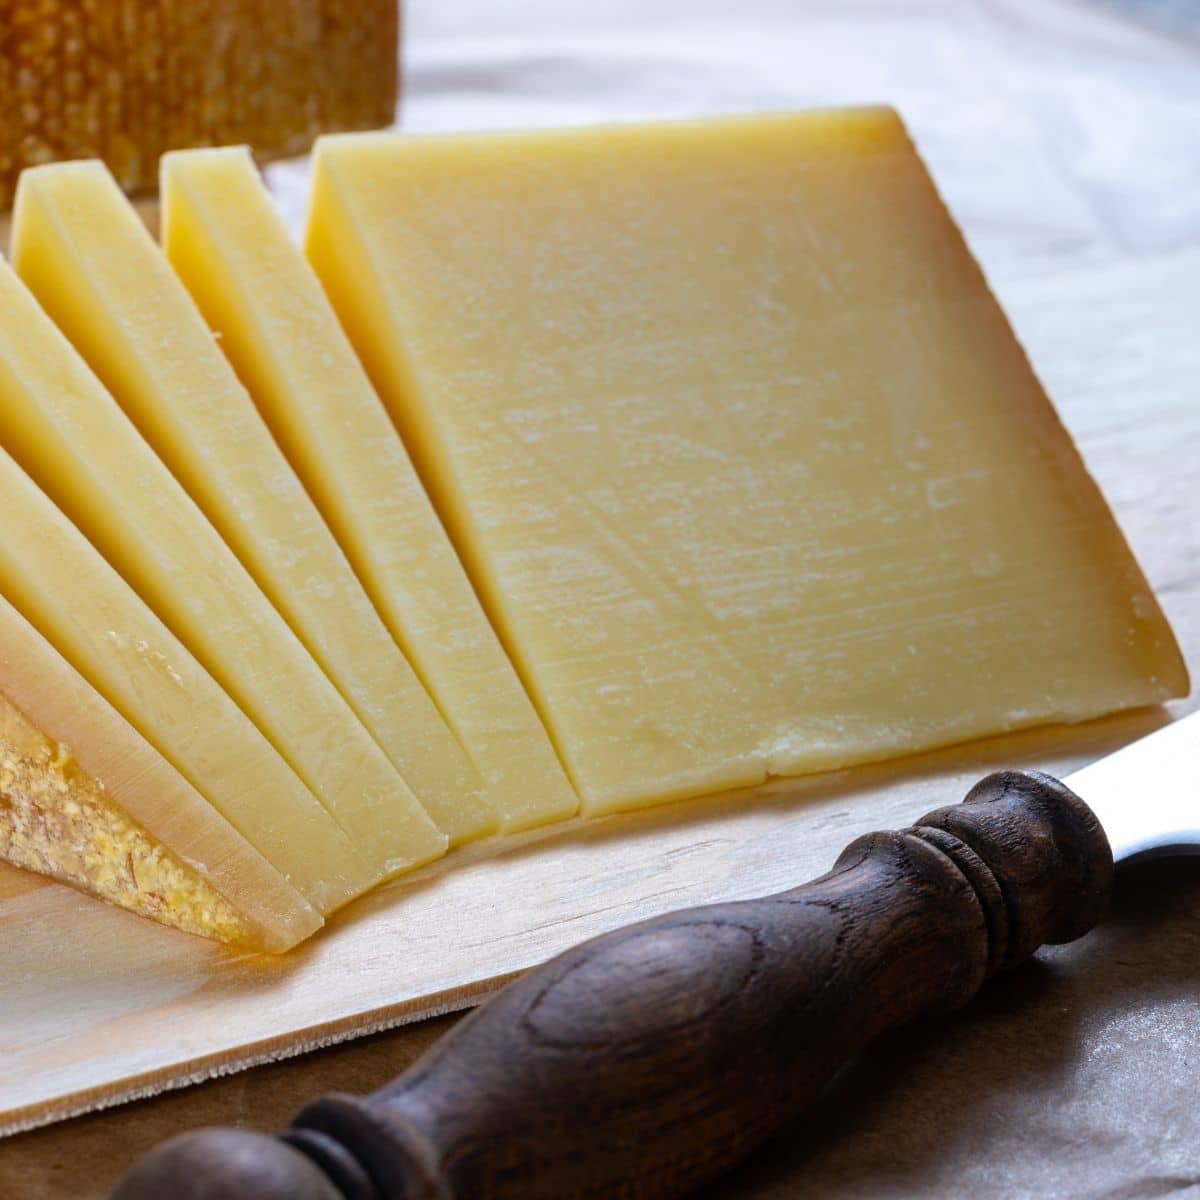 Le migliori opzioni di sostituto del formaggio groviera con l'immagine di groviera appena affettata.